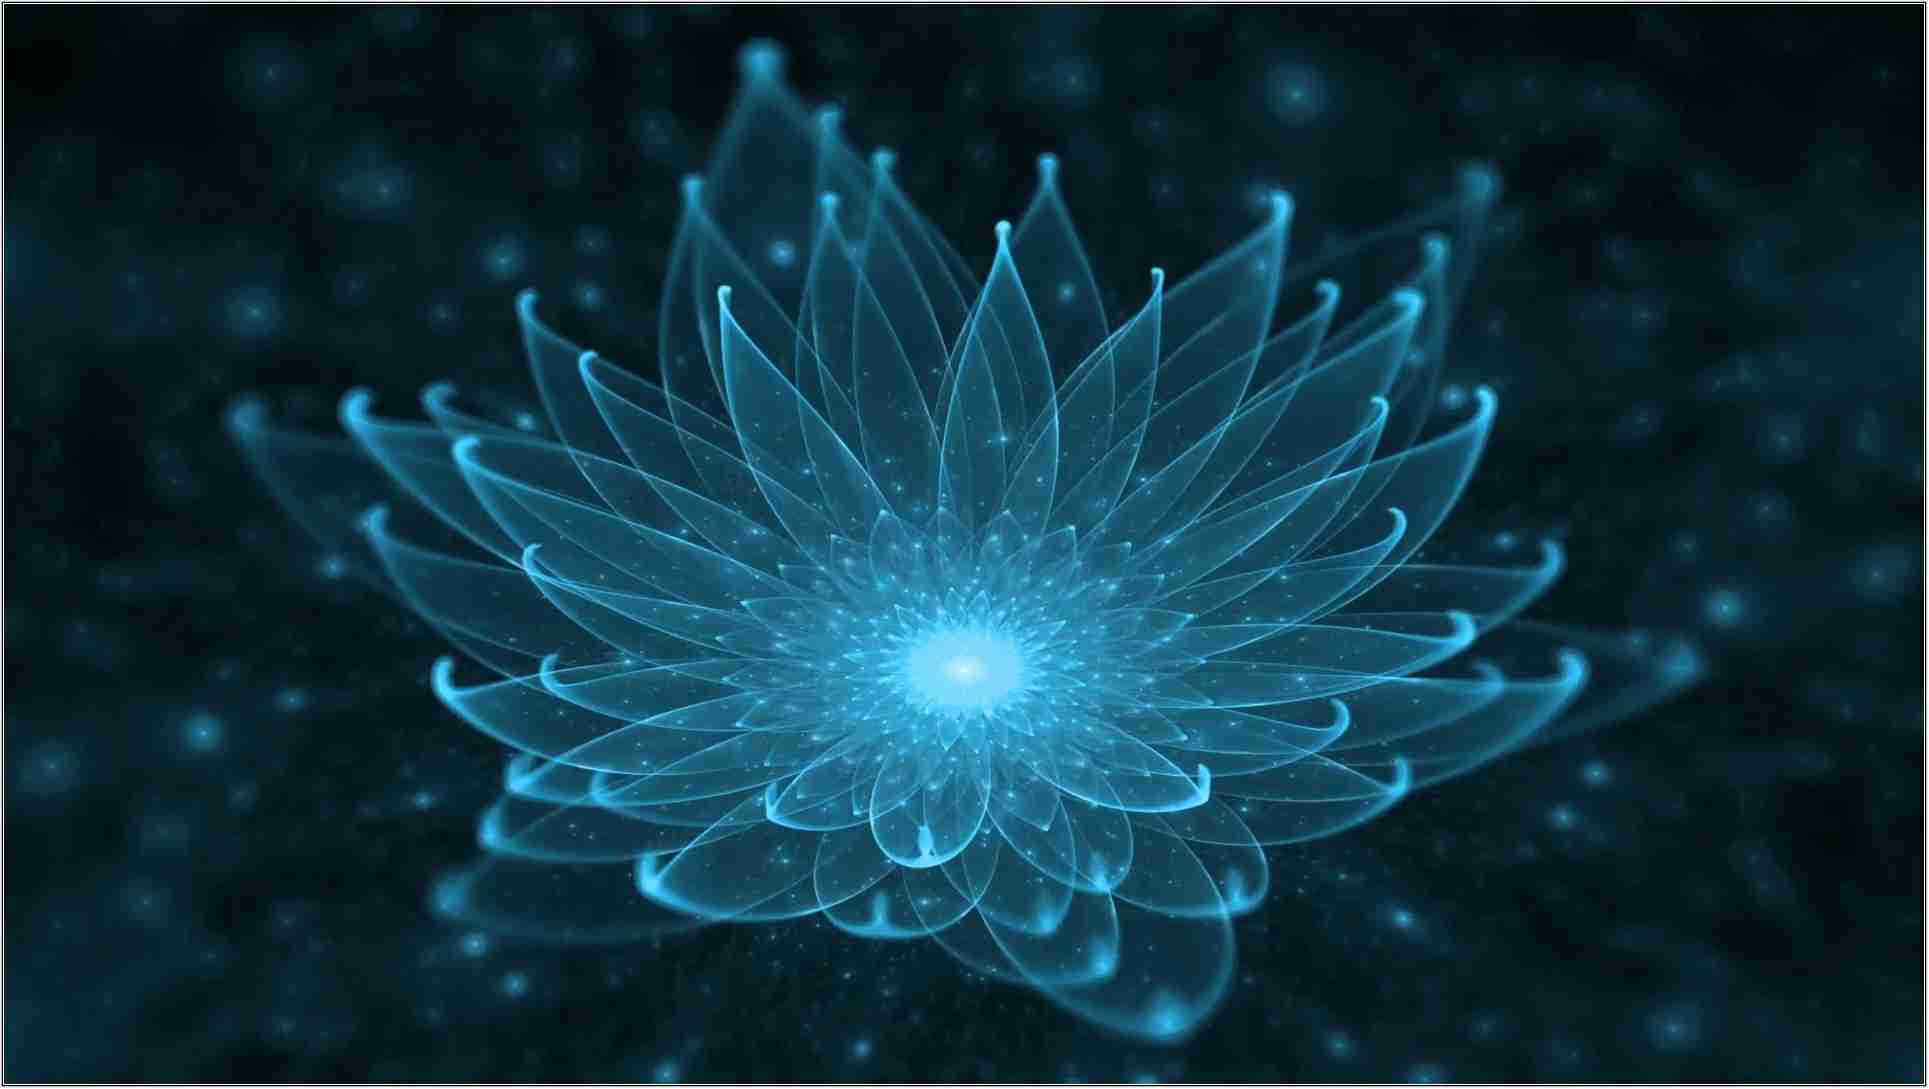 Download Enlightenment Meditation Love RoyaltyFree Stock Illustration  Image  Pixabay